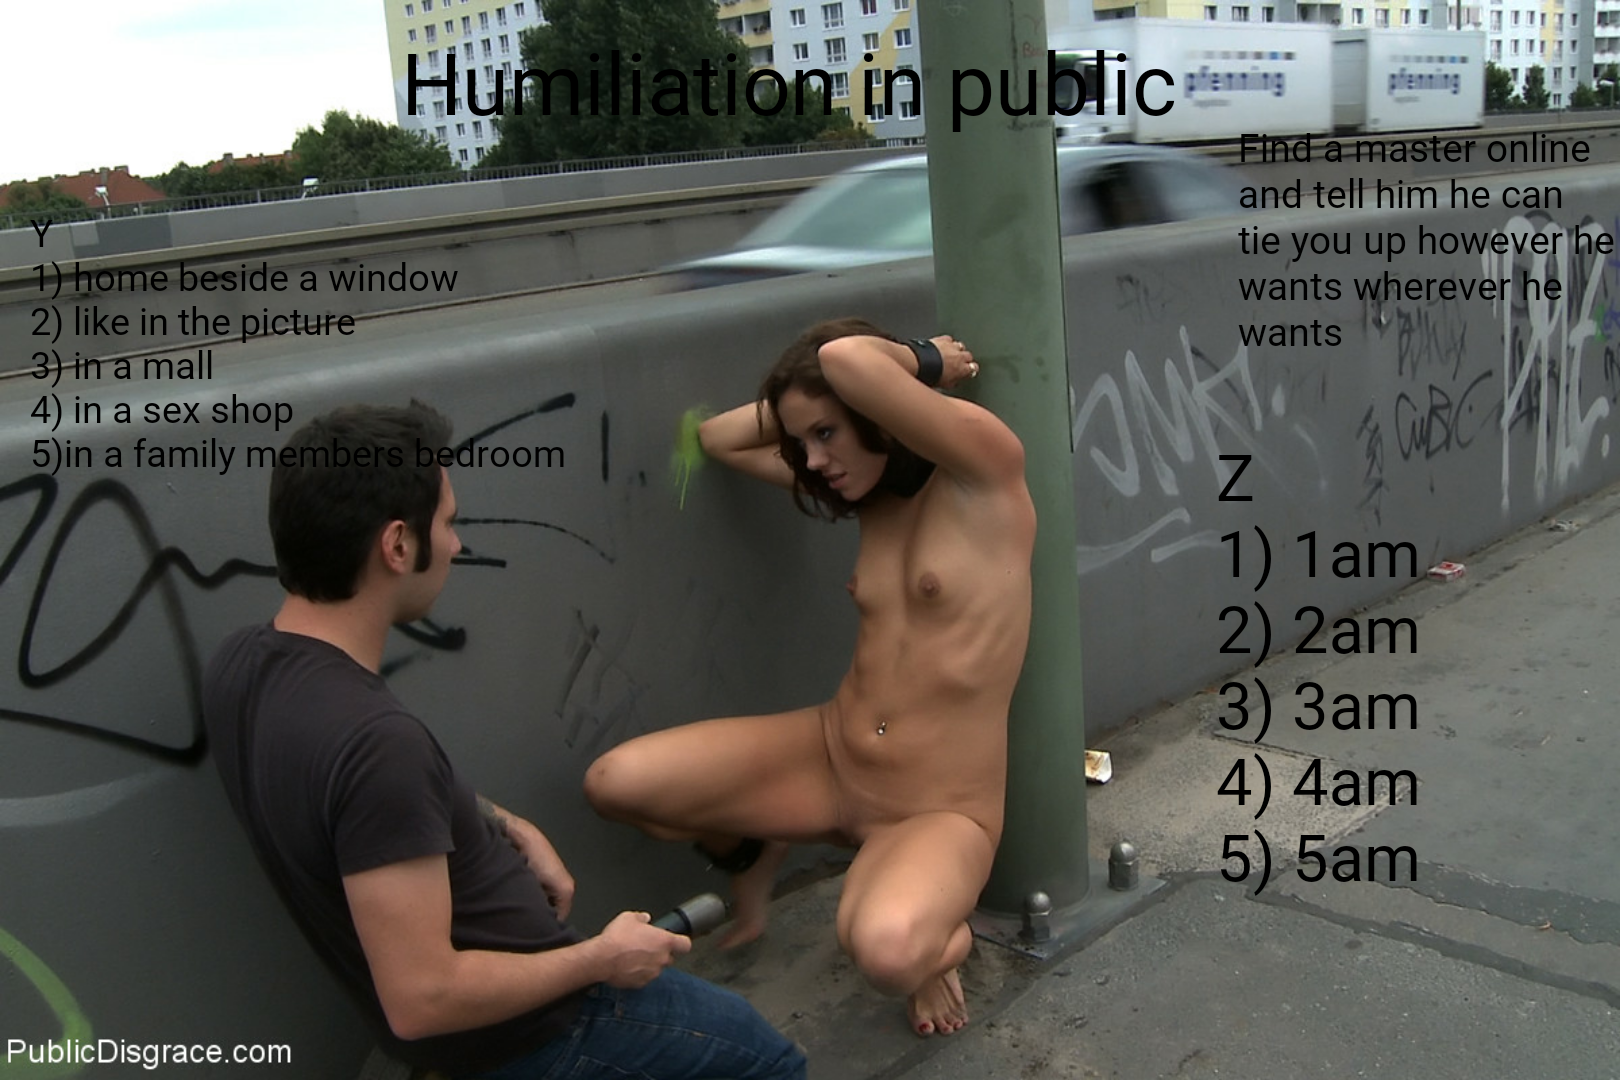 Humiliation public